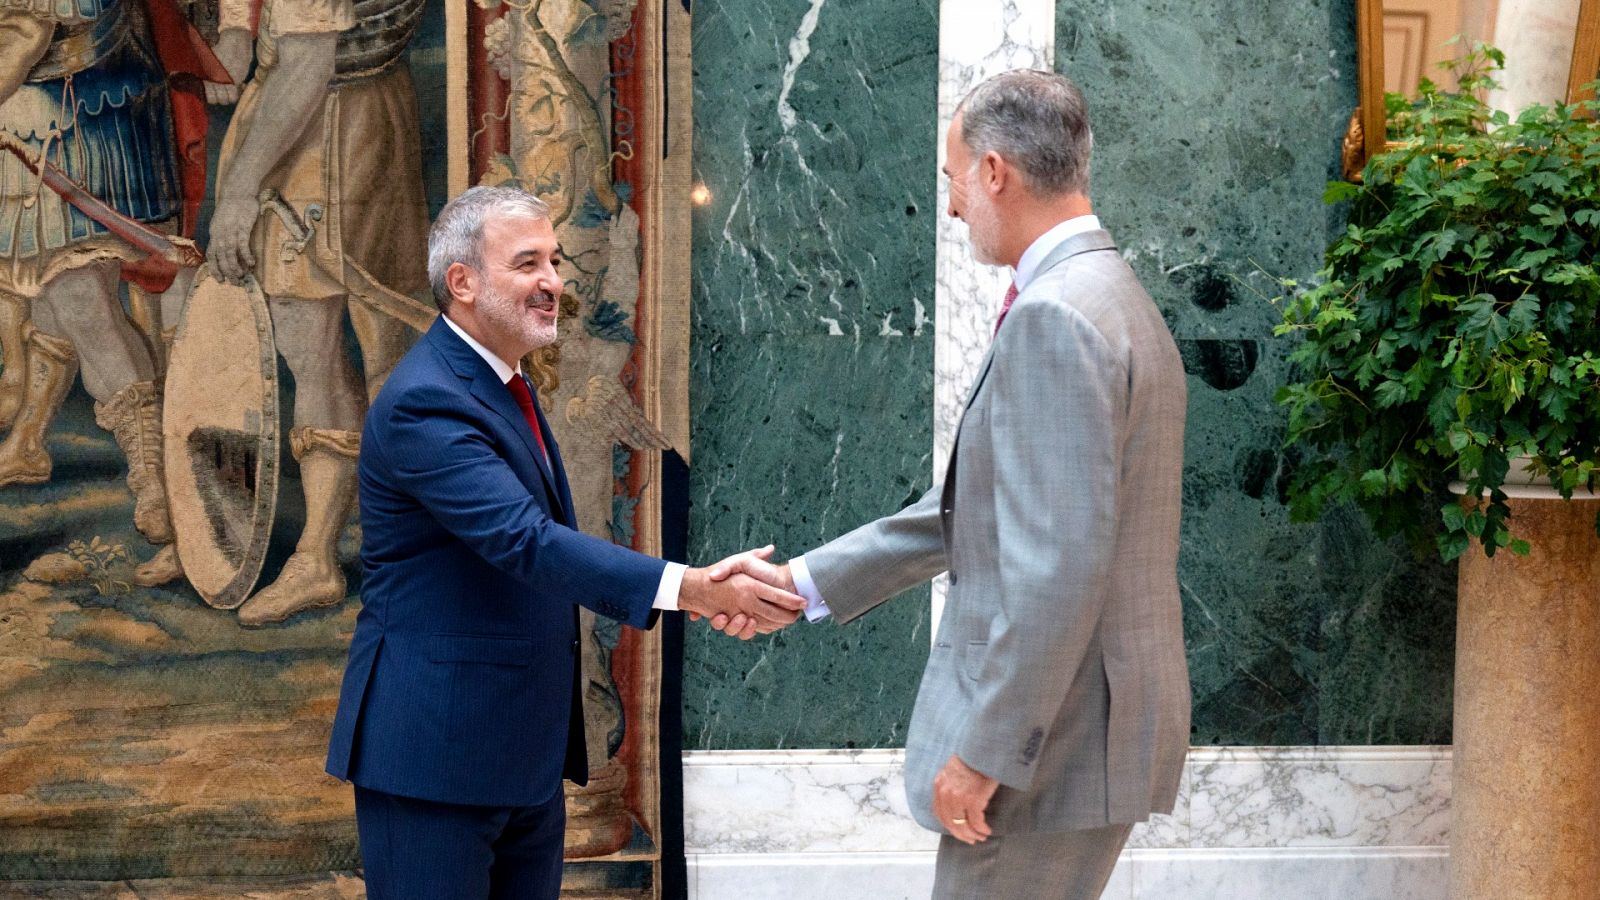 El alcalde de Barcelona, Jaume Collboni, es recibido por el rey Felipe VI